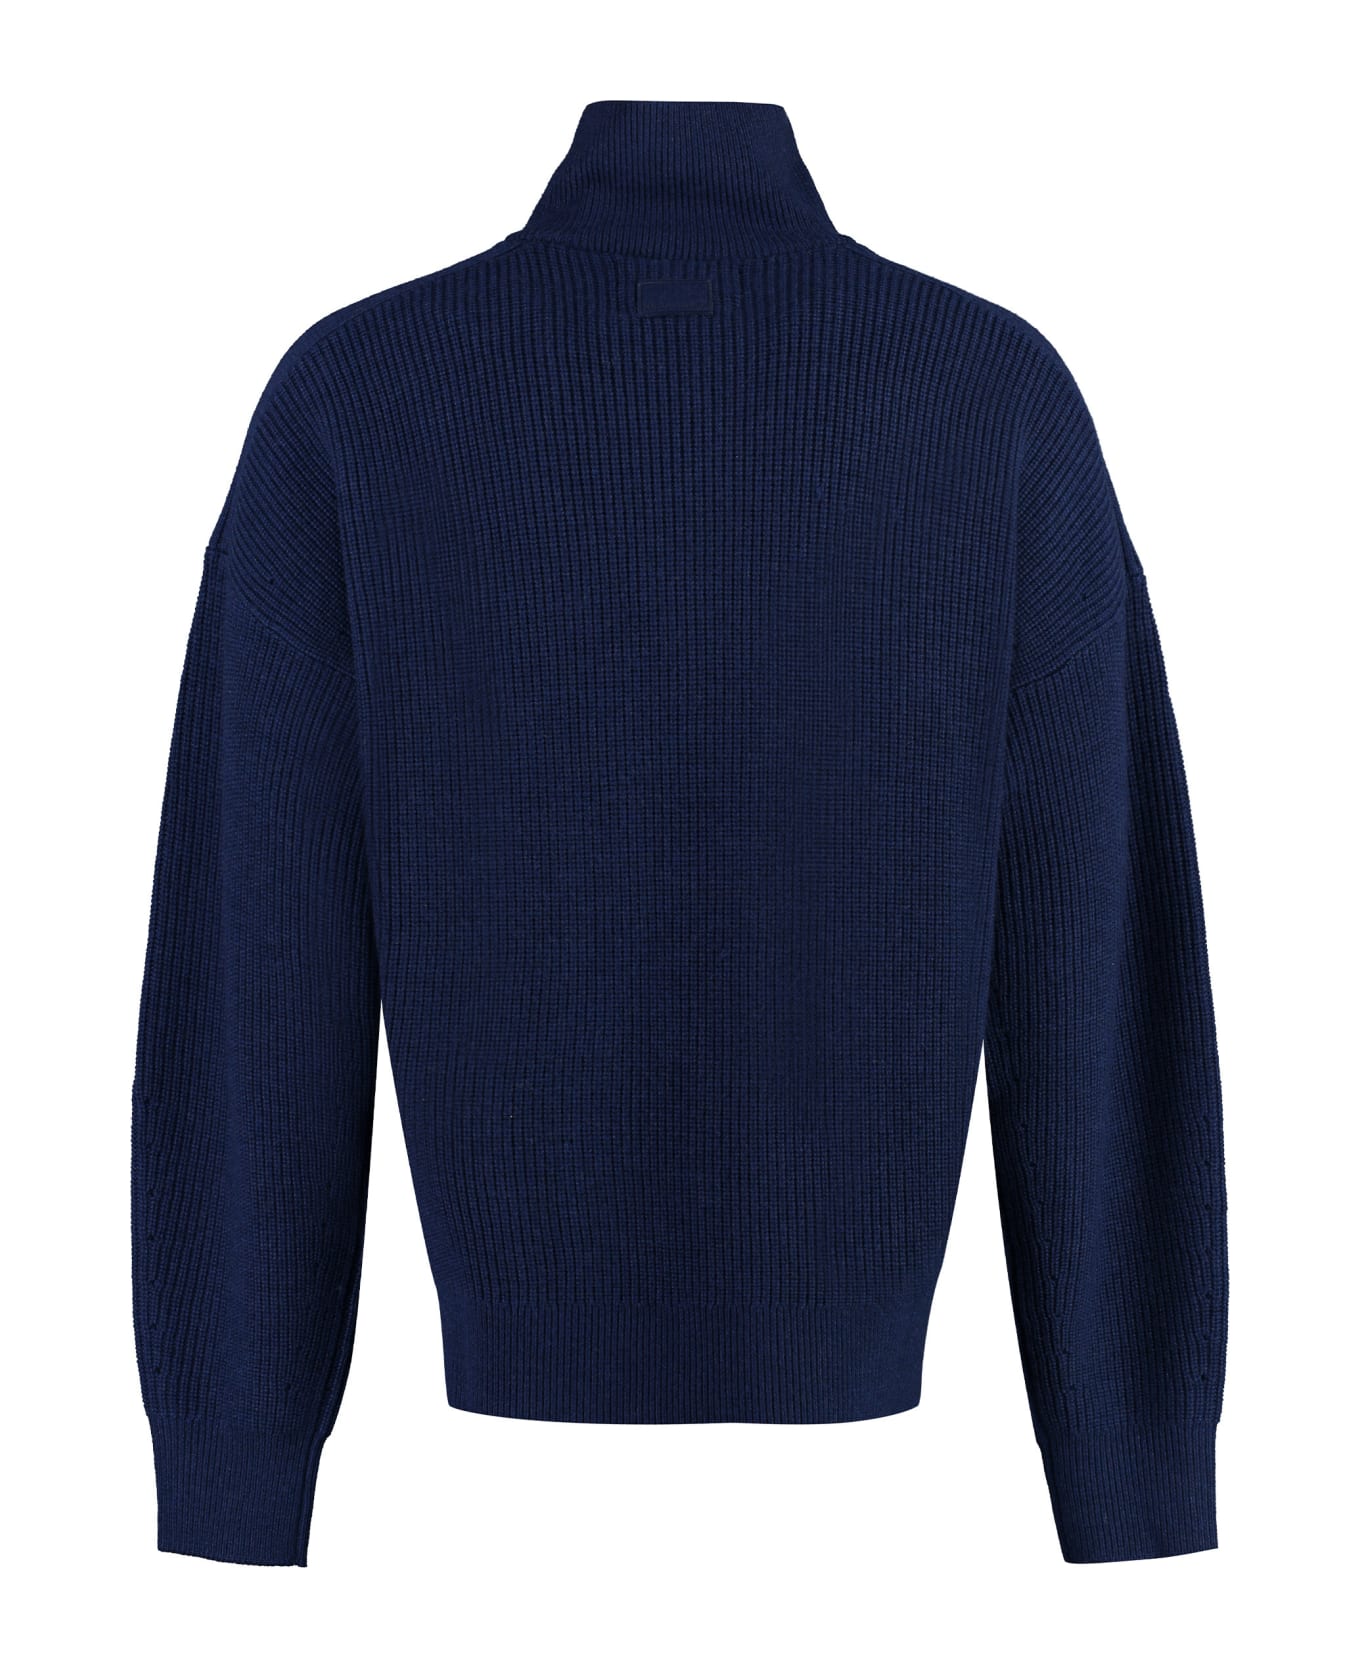 Isabel Marant Benny Turtleneck Wool Pullover - blue